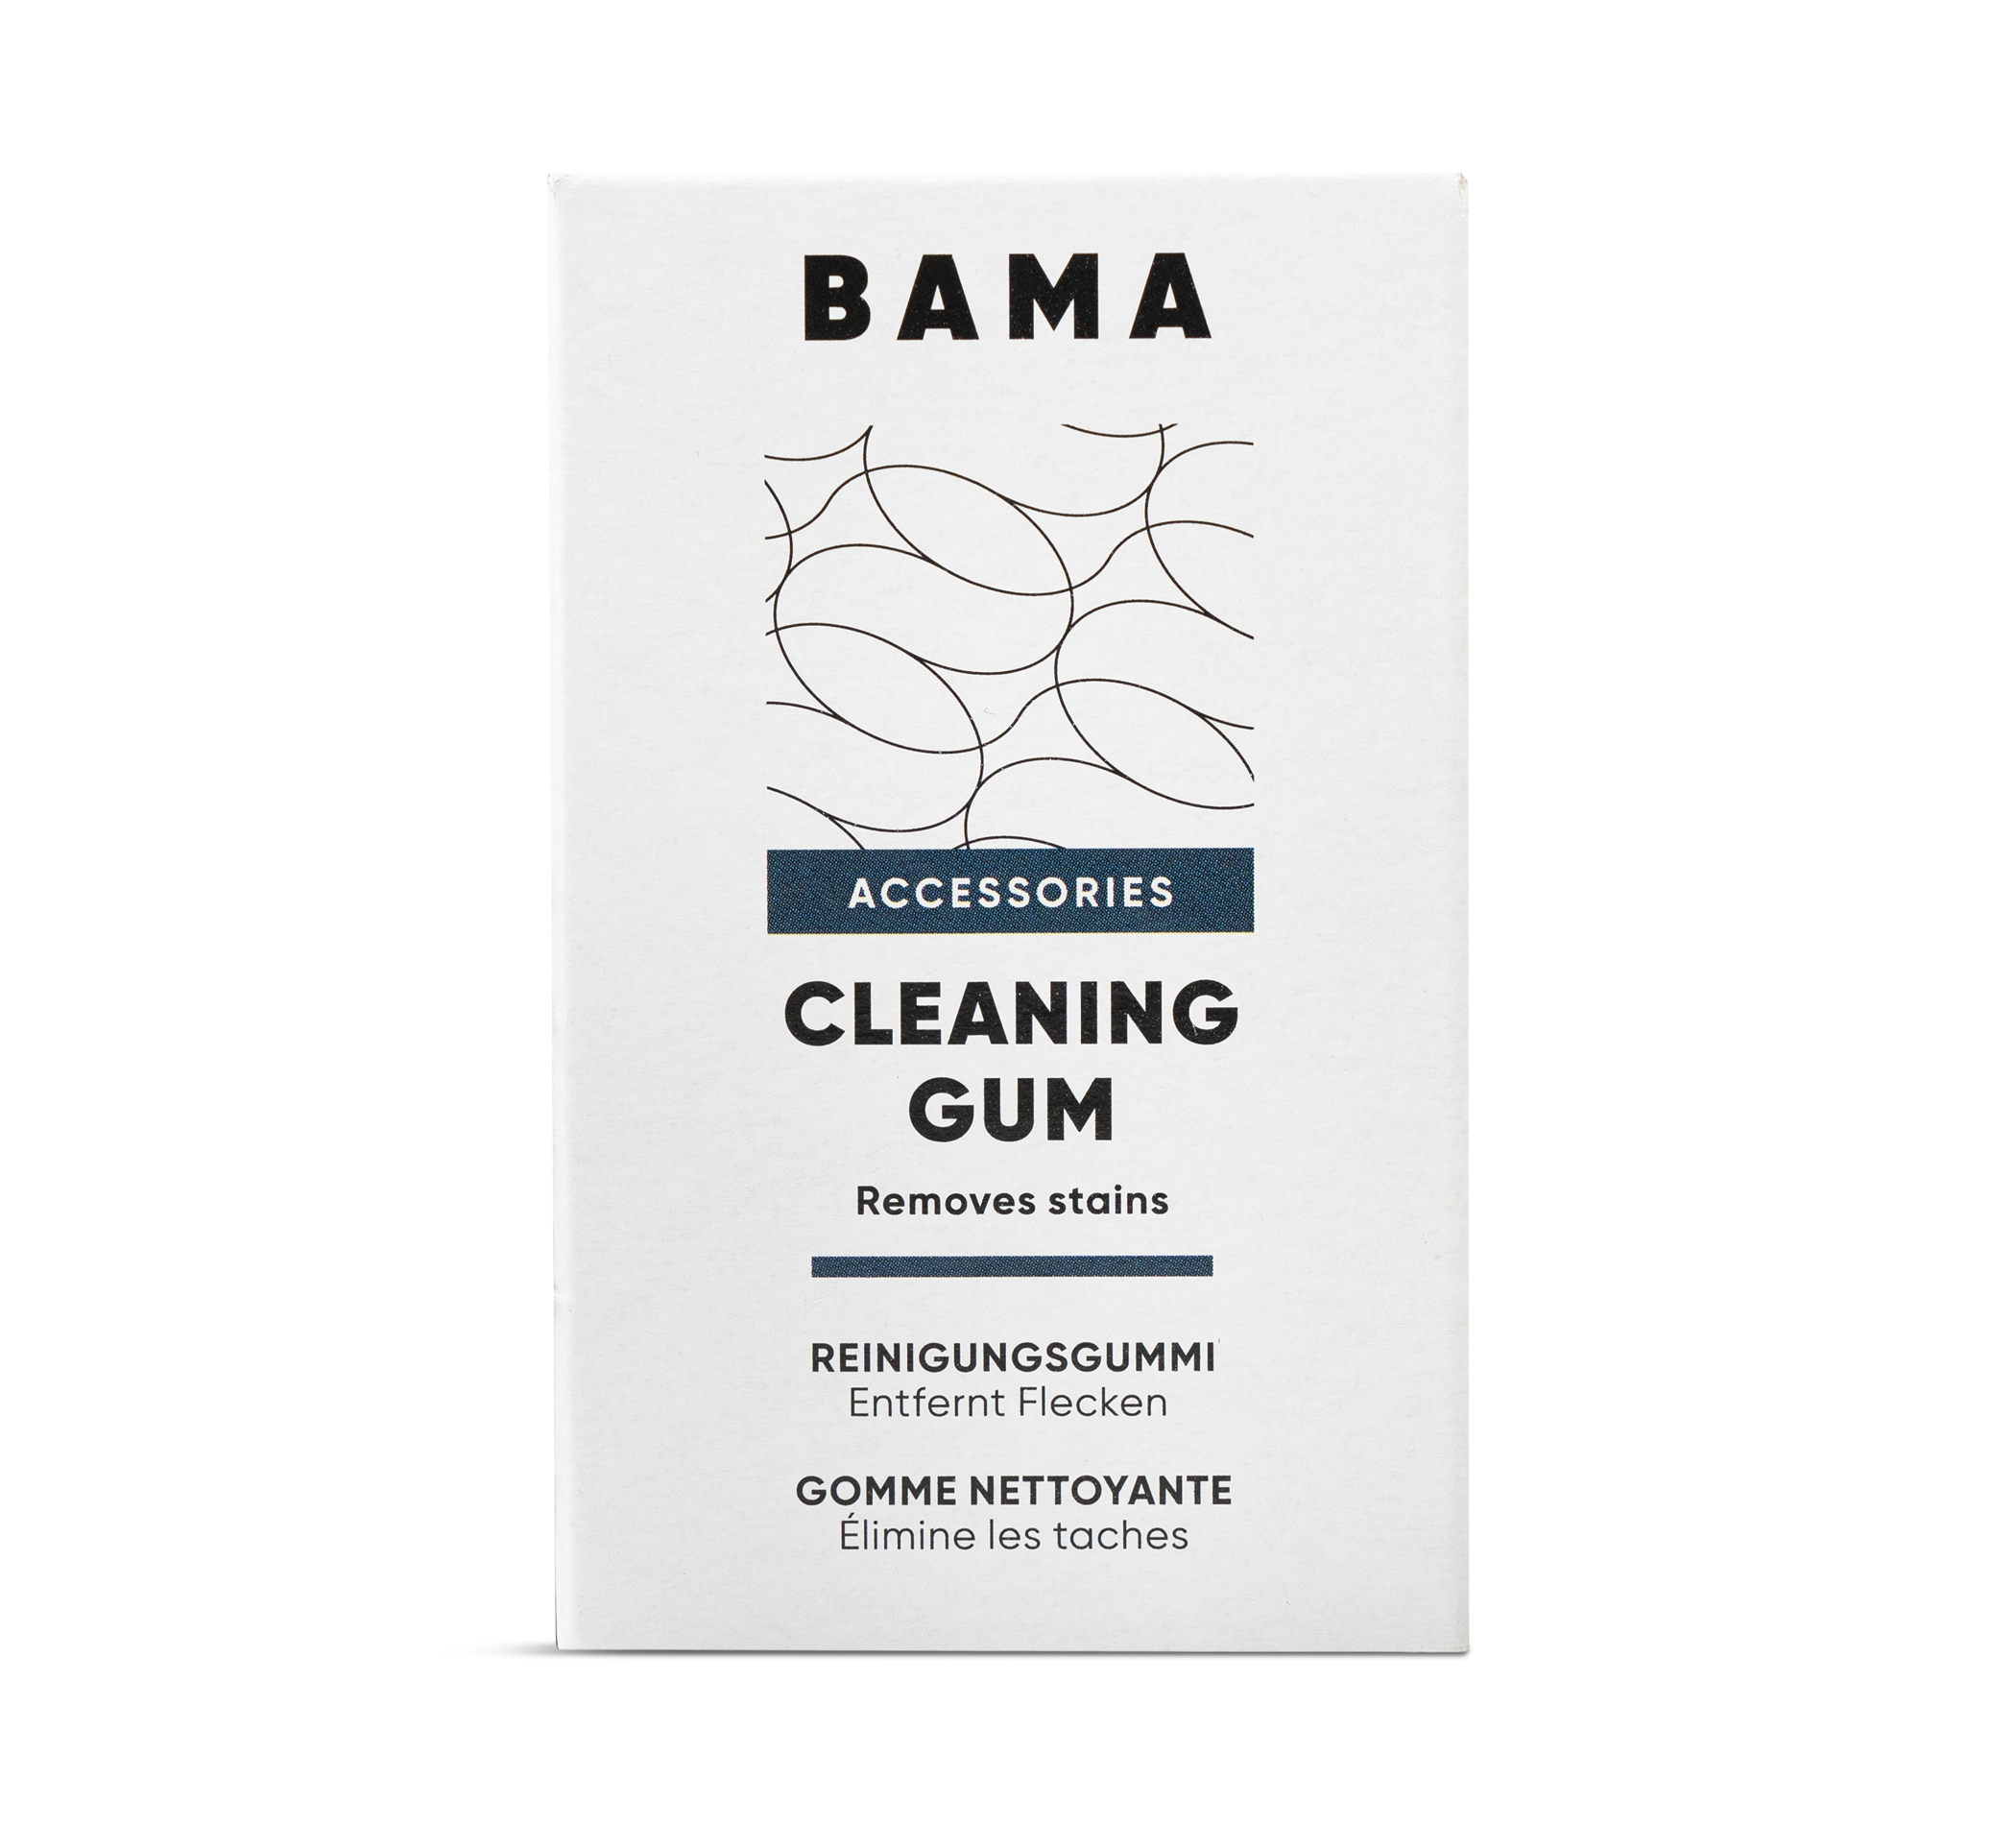 Cleaning Gum - Reinigen